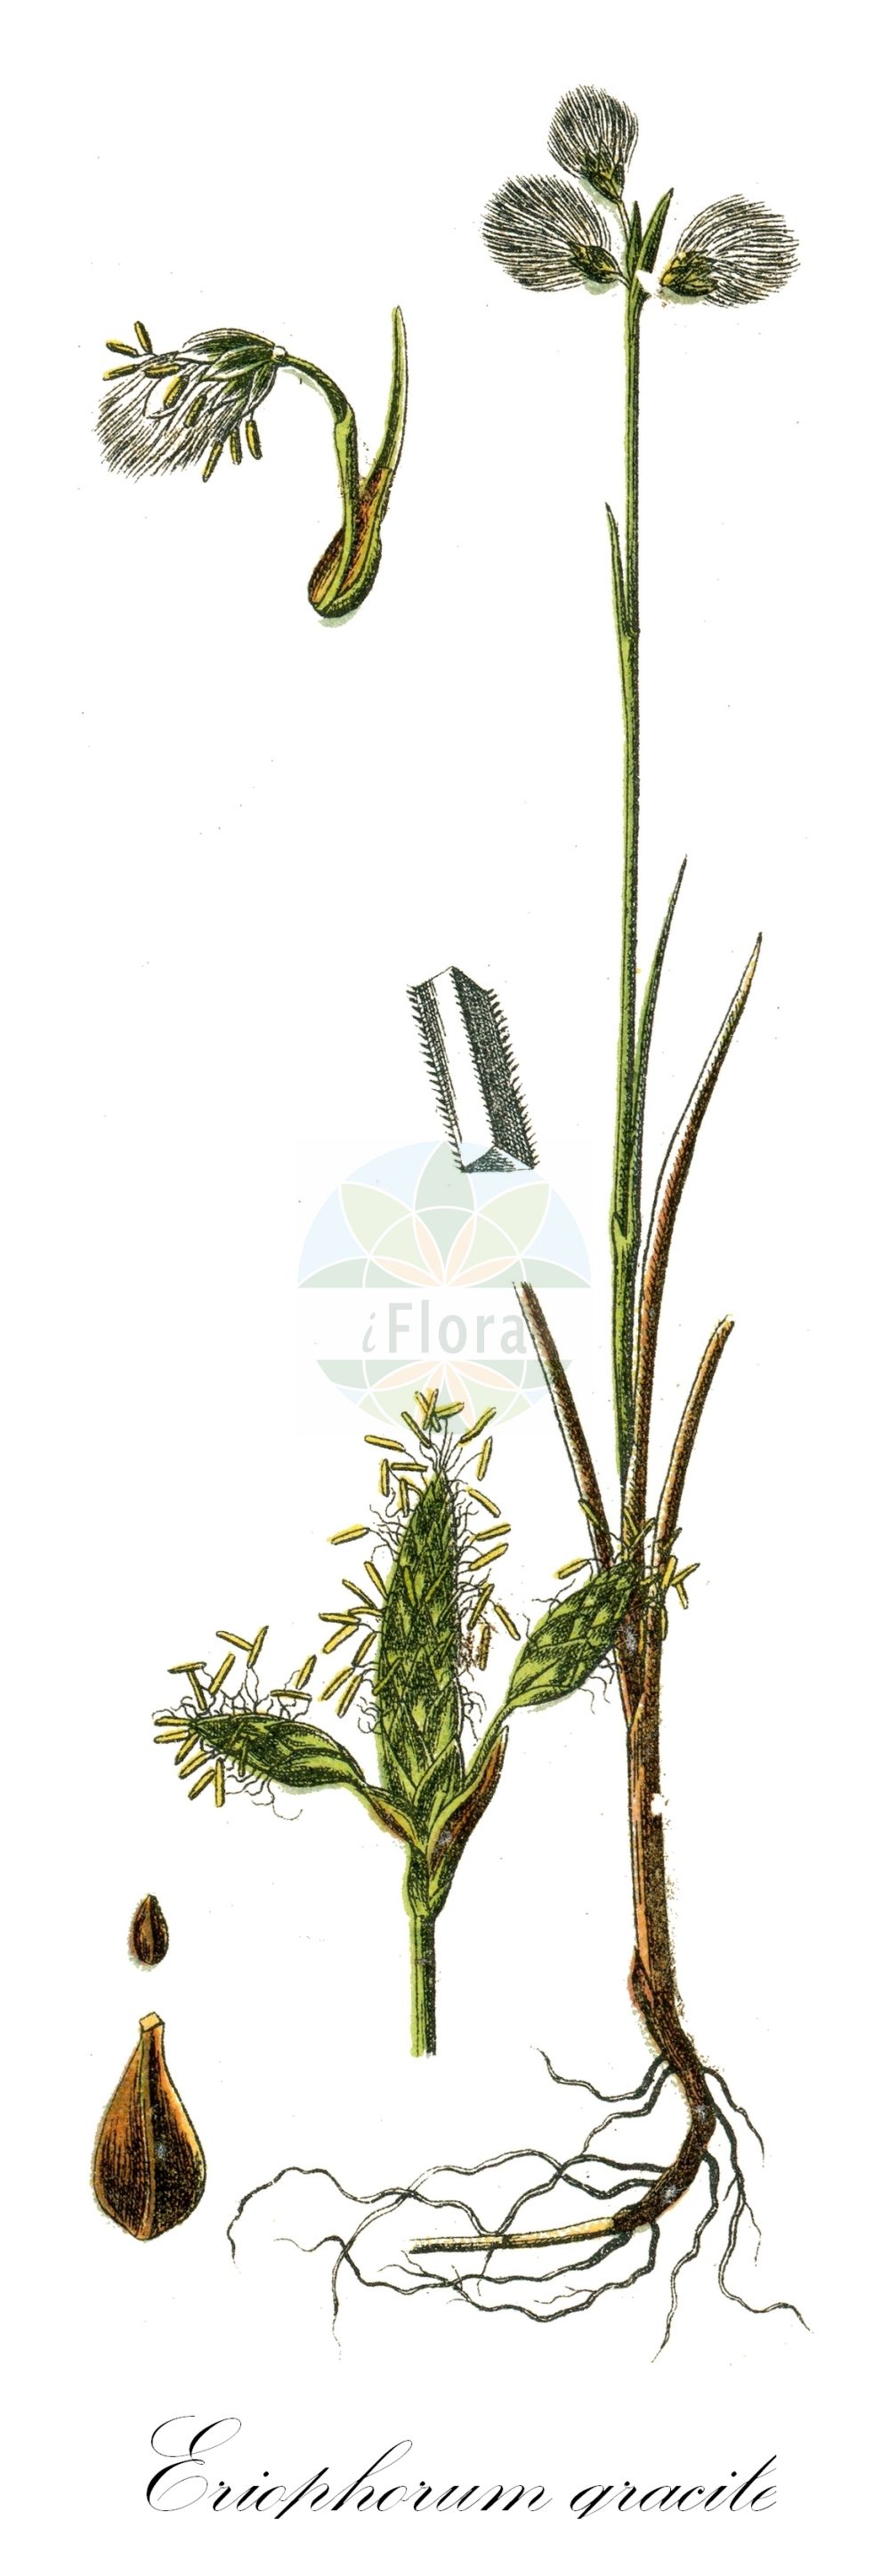 Historische Abbildung von Eriophorum gracile (Schlankes Wollgras - Slender Cottongrass). Das Bild zeigt Blatt, Bluete, Frucht und Same. ---- Historical Drawing of Eriophorum gracile (Schlankes Wollgras - Slender Cottongrass). The image is showing leaf, flower, fruit and seed.(Eriophorum gracile,Schlankes Wollgras,Slender Cottongrass,Eriophorum gracile,Schlankes Wollgras,Slender Cottongrass,Eriophorum,Wollgras,Cottongrass,Cyperaceae,Sauergräser,Sedge family,Blatt,Bluete,Frucht,Same,leaf,flower,fruit,seed,Sturm (1796f))